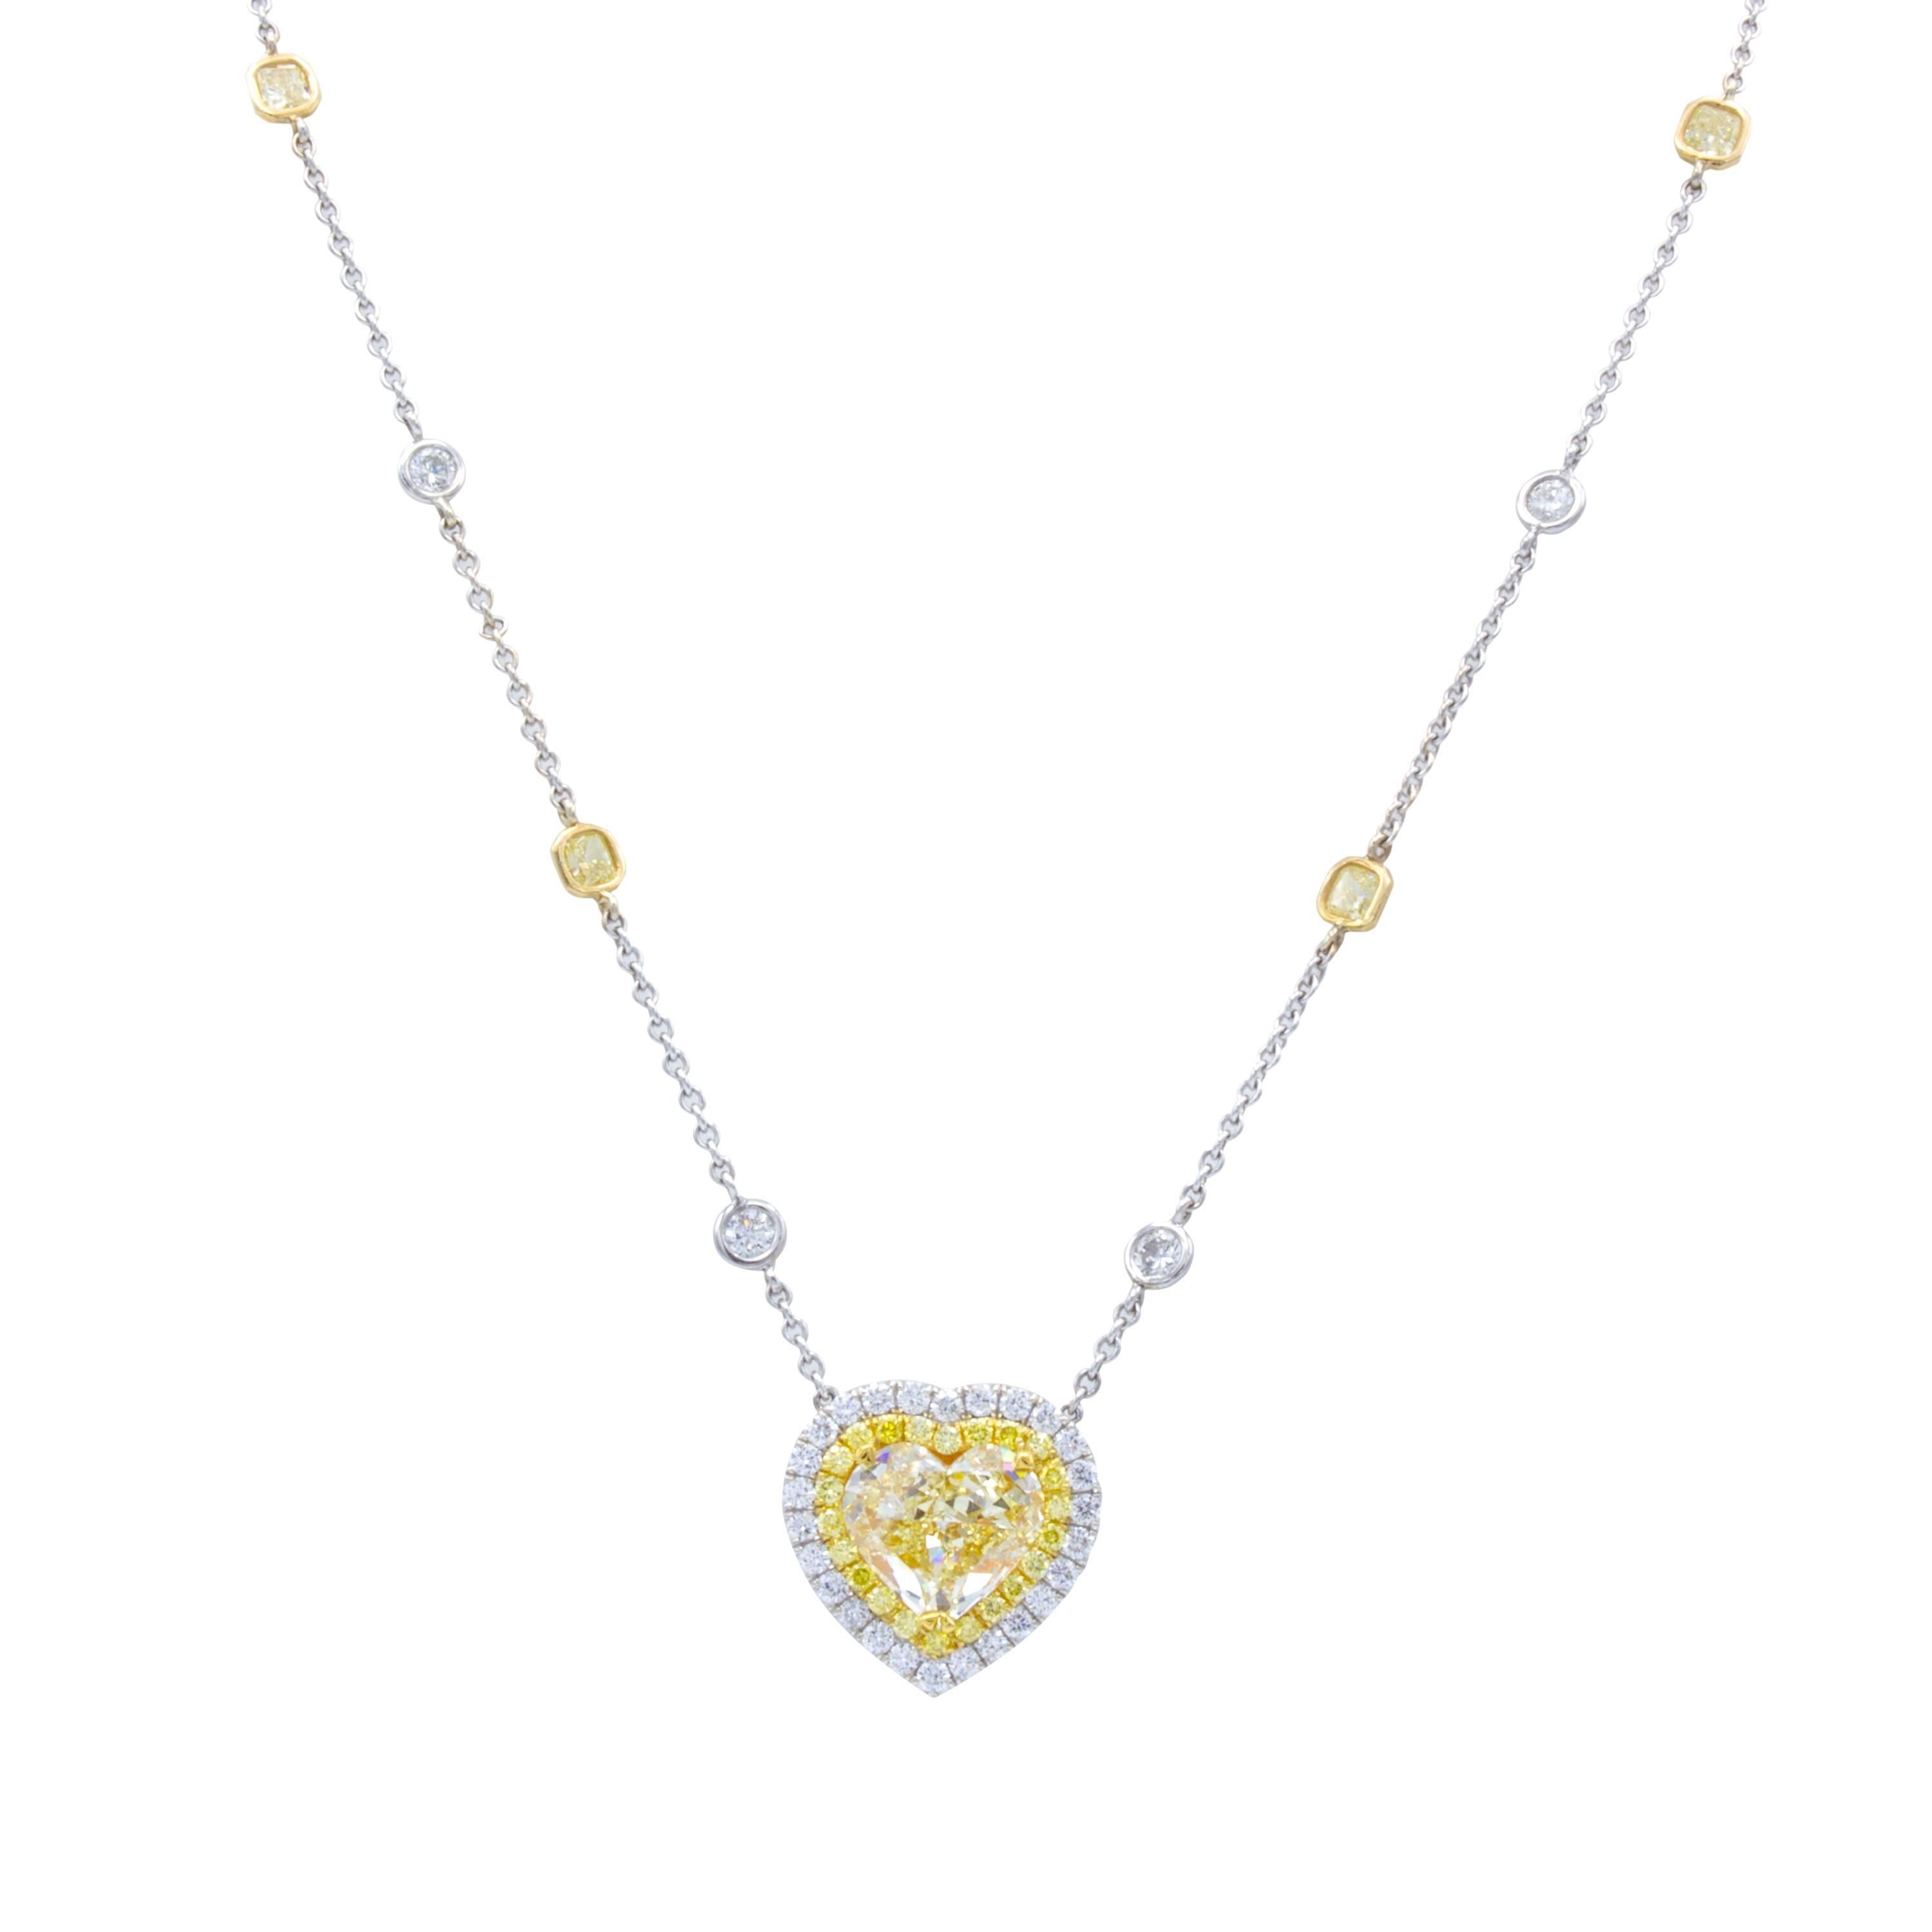 Un chef-d'œuvre sentimental de Rosenberg Diamonds & Co. Ce magnifique collier pendentif en diamant en forme de cœur brille avec un diamant naturel jaune clair de 3,97 carats certifié GIA au centre. Tout autour du pendentif, deux rangées de diamants